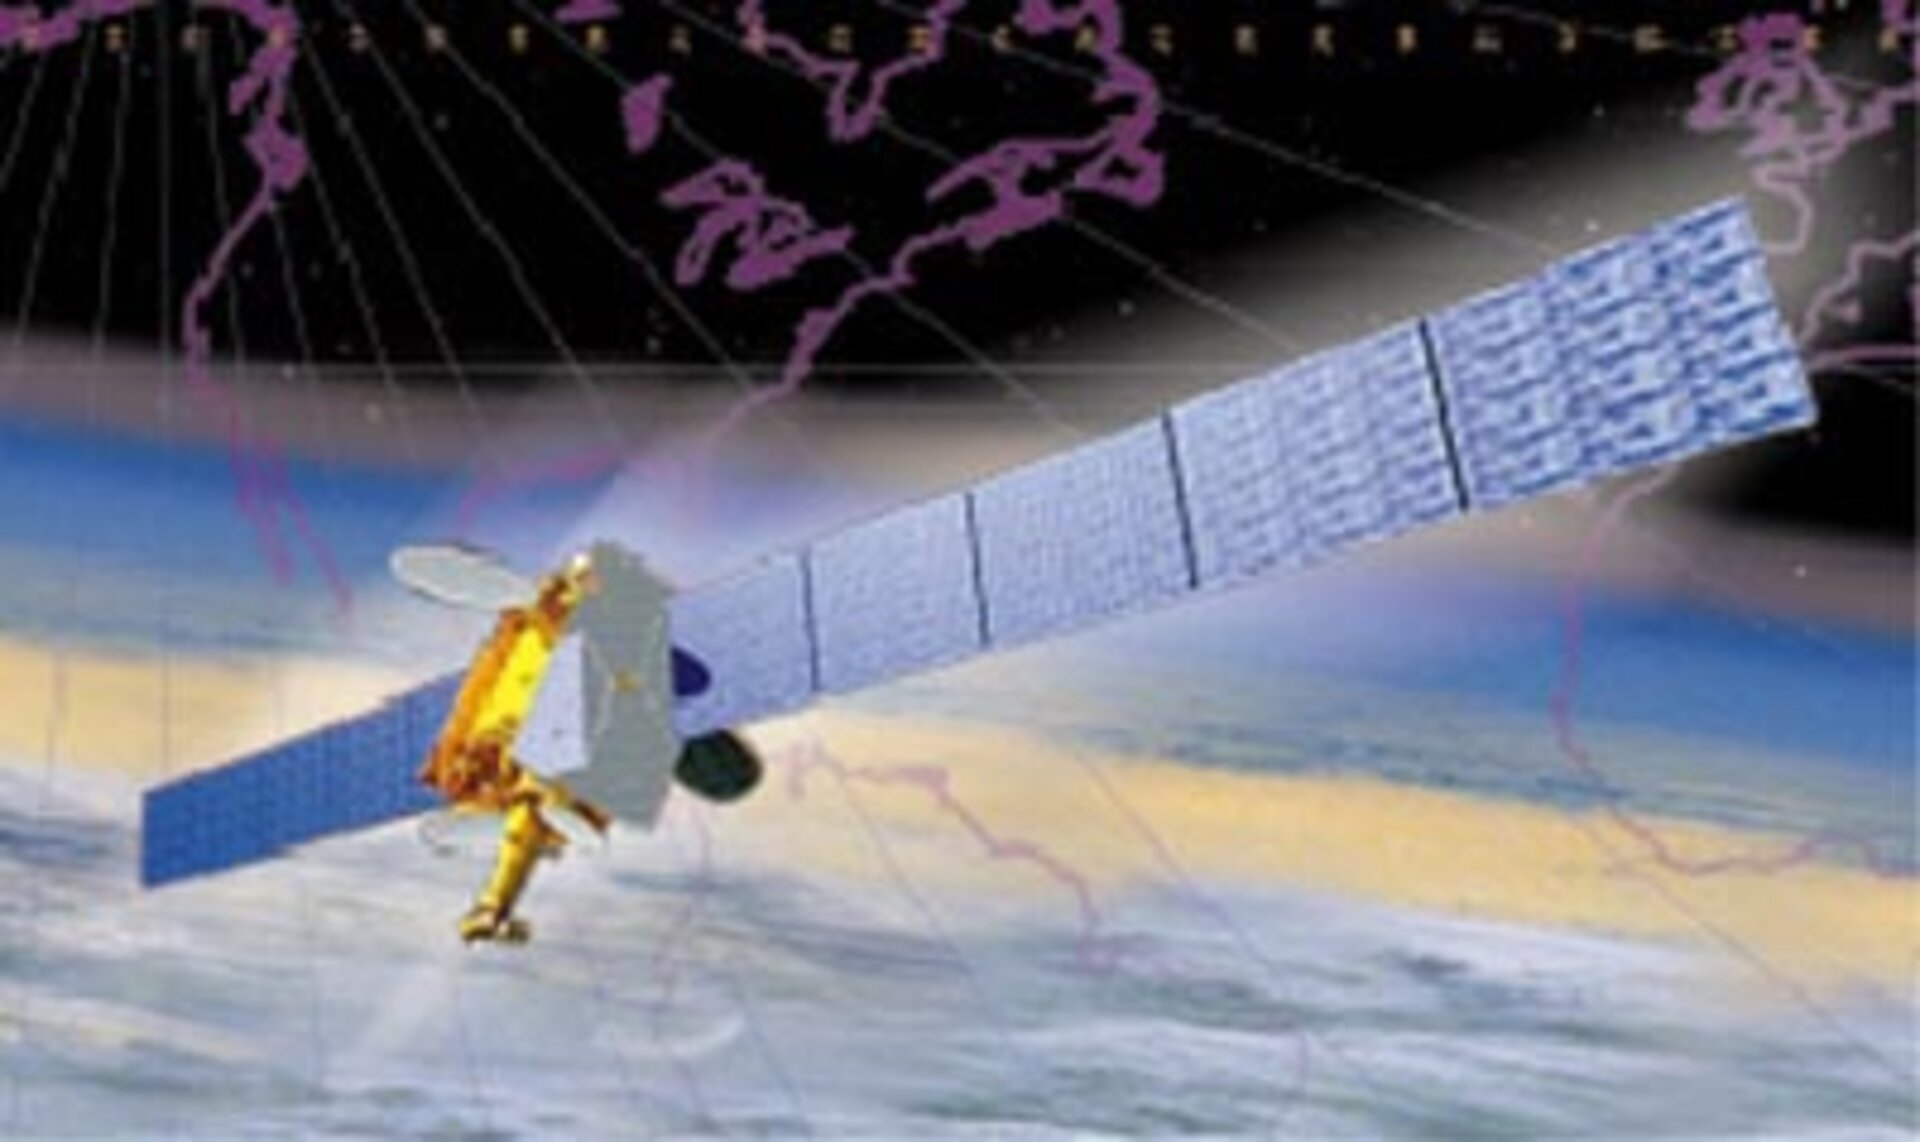 Hispasat's Amazonas satellite